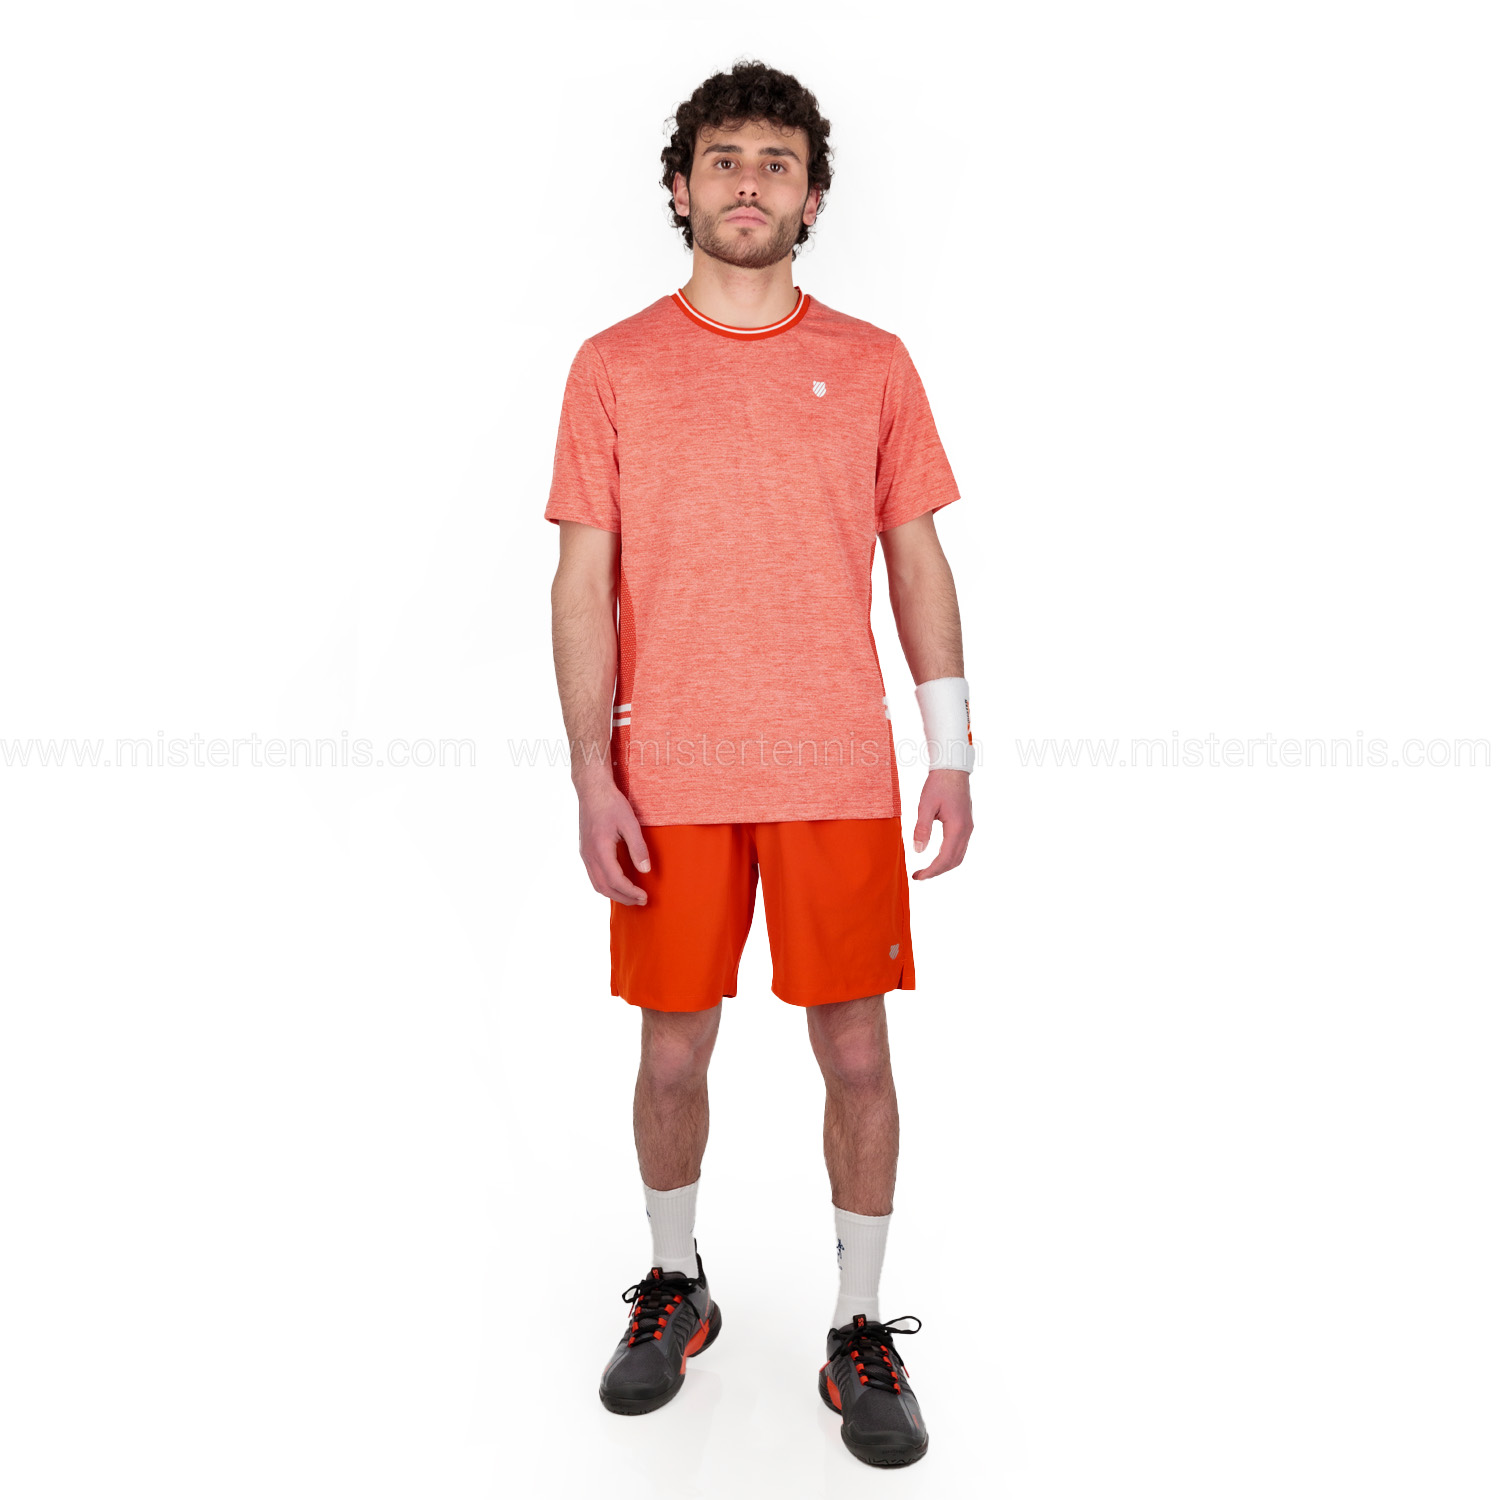 K-Swiss Hypercourt Double Crew Camiseta - Spicy Orange/Melange